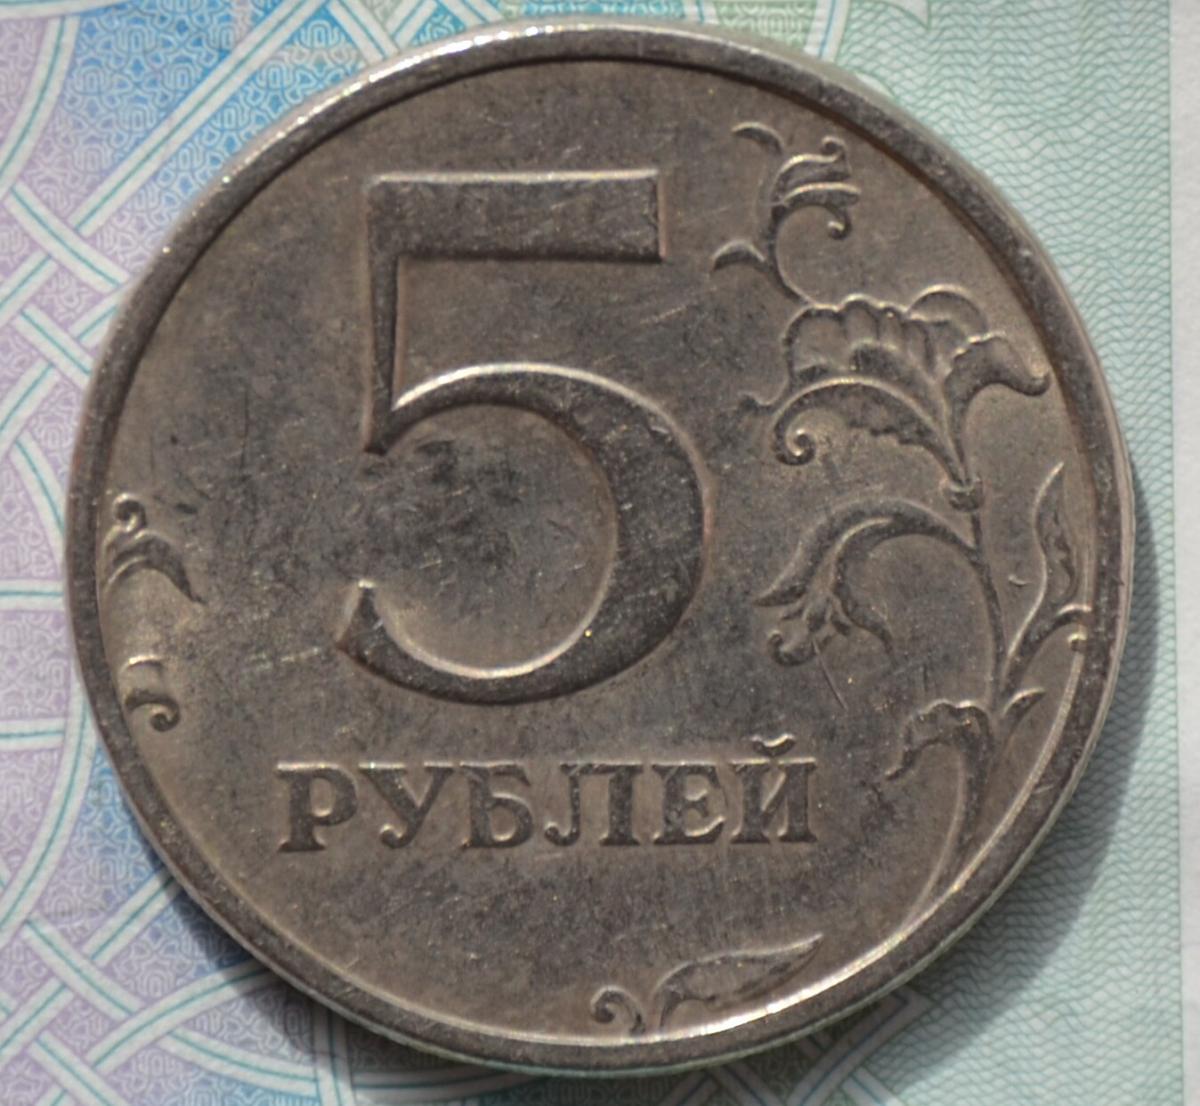 Момента 5 рублей